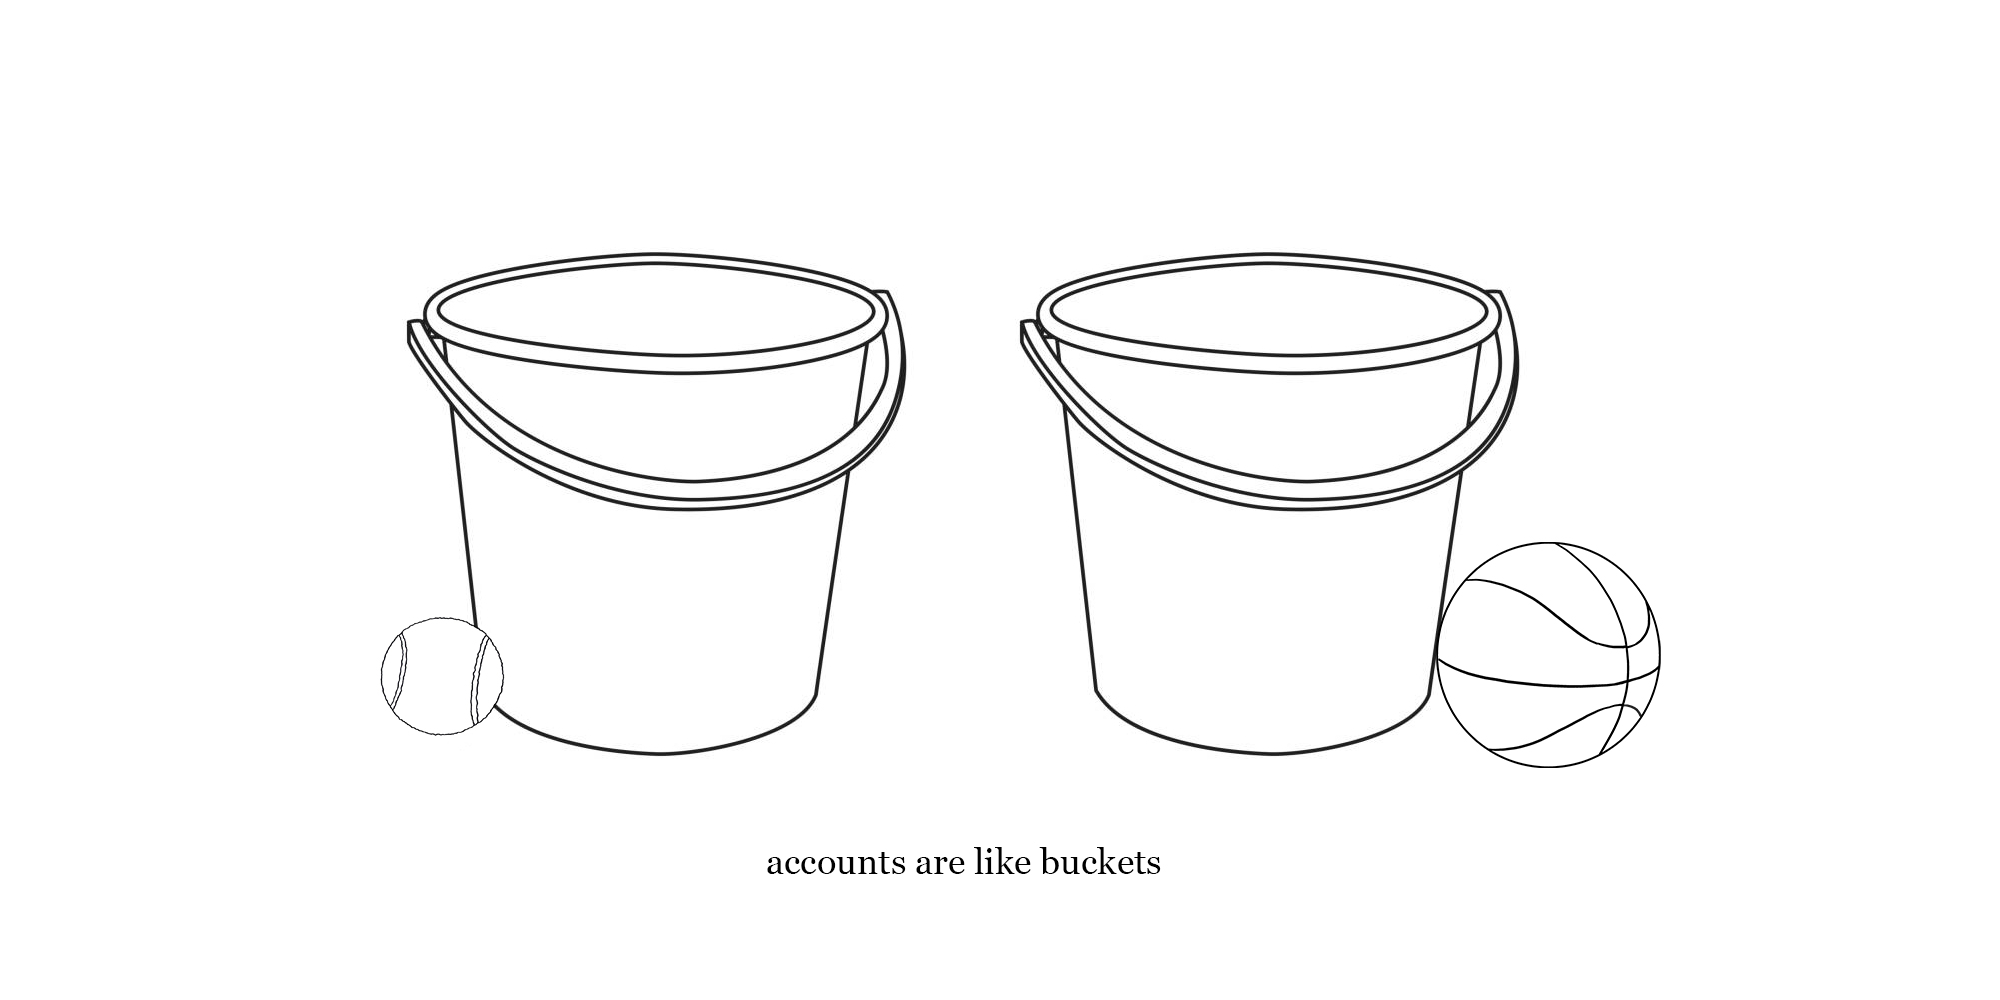 xero setup - accounts are like buckets